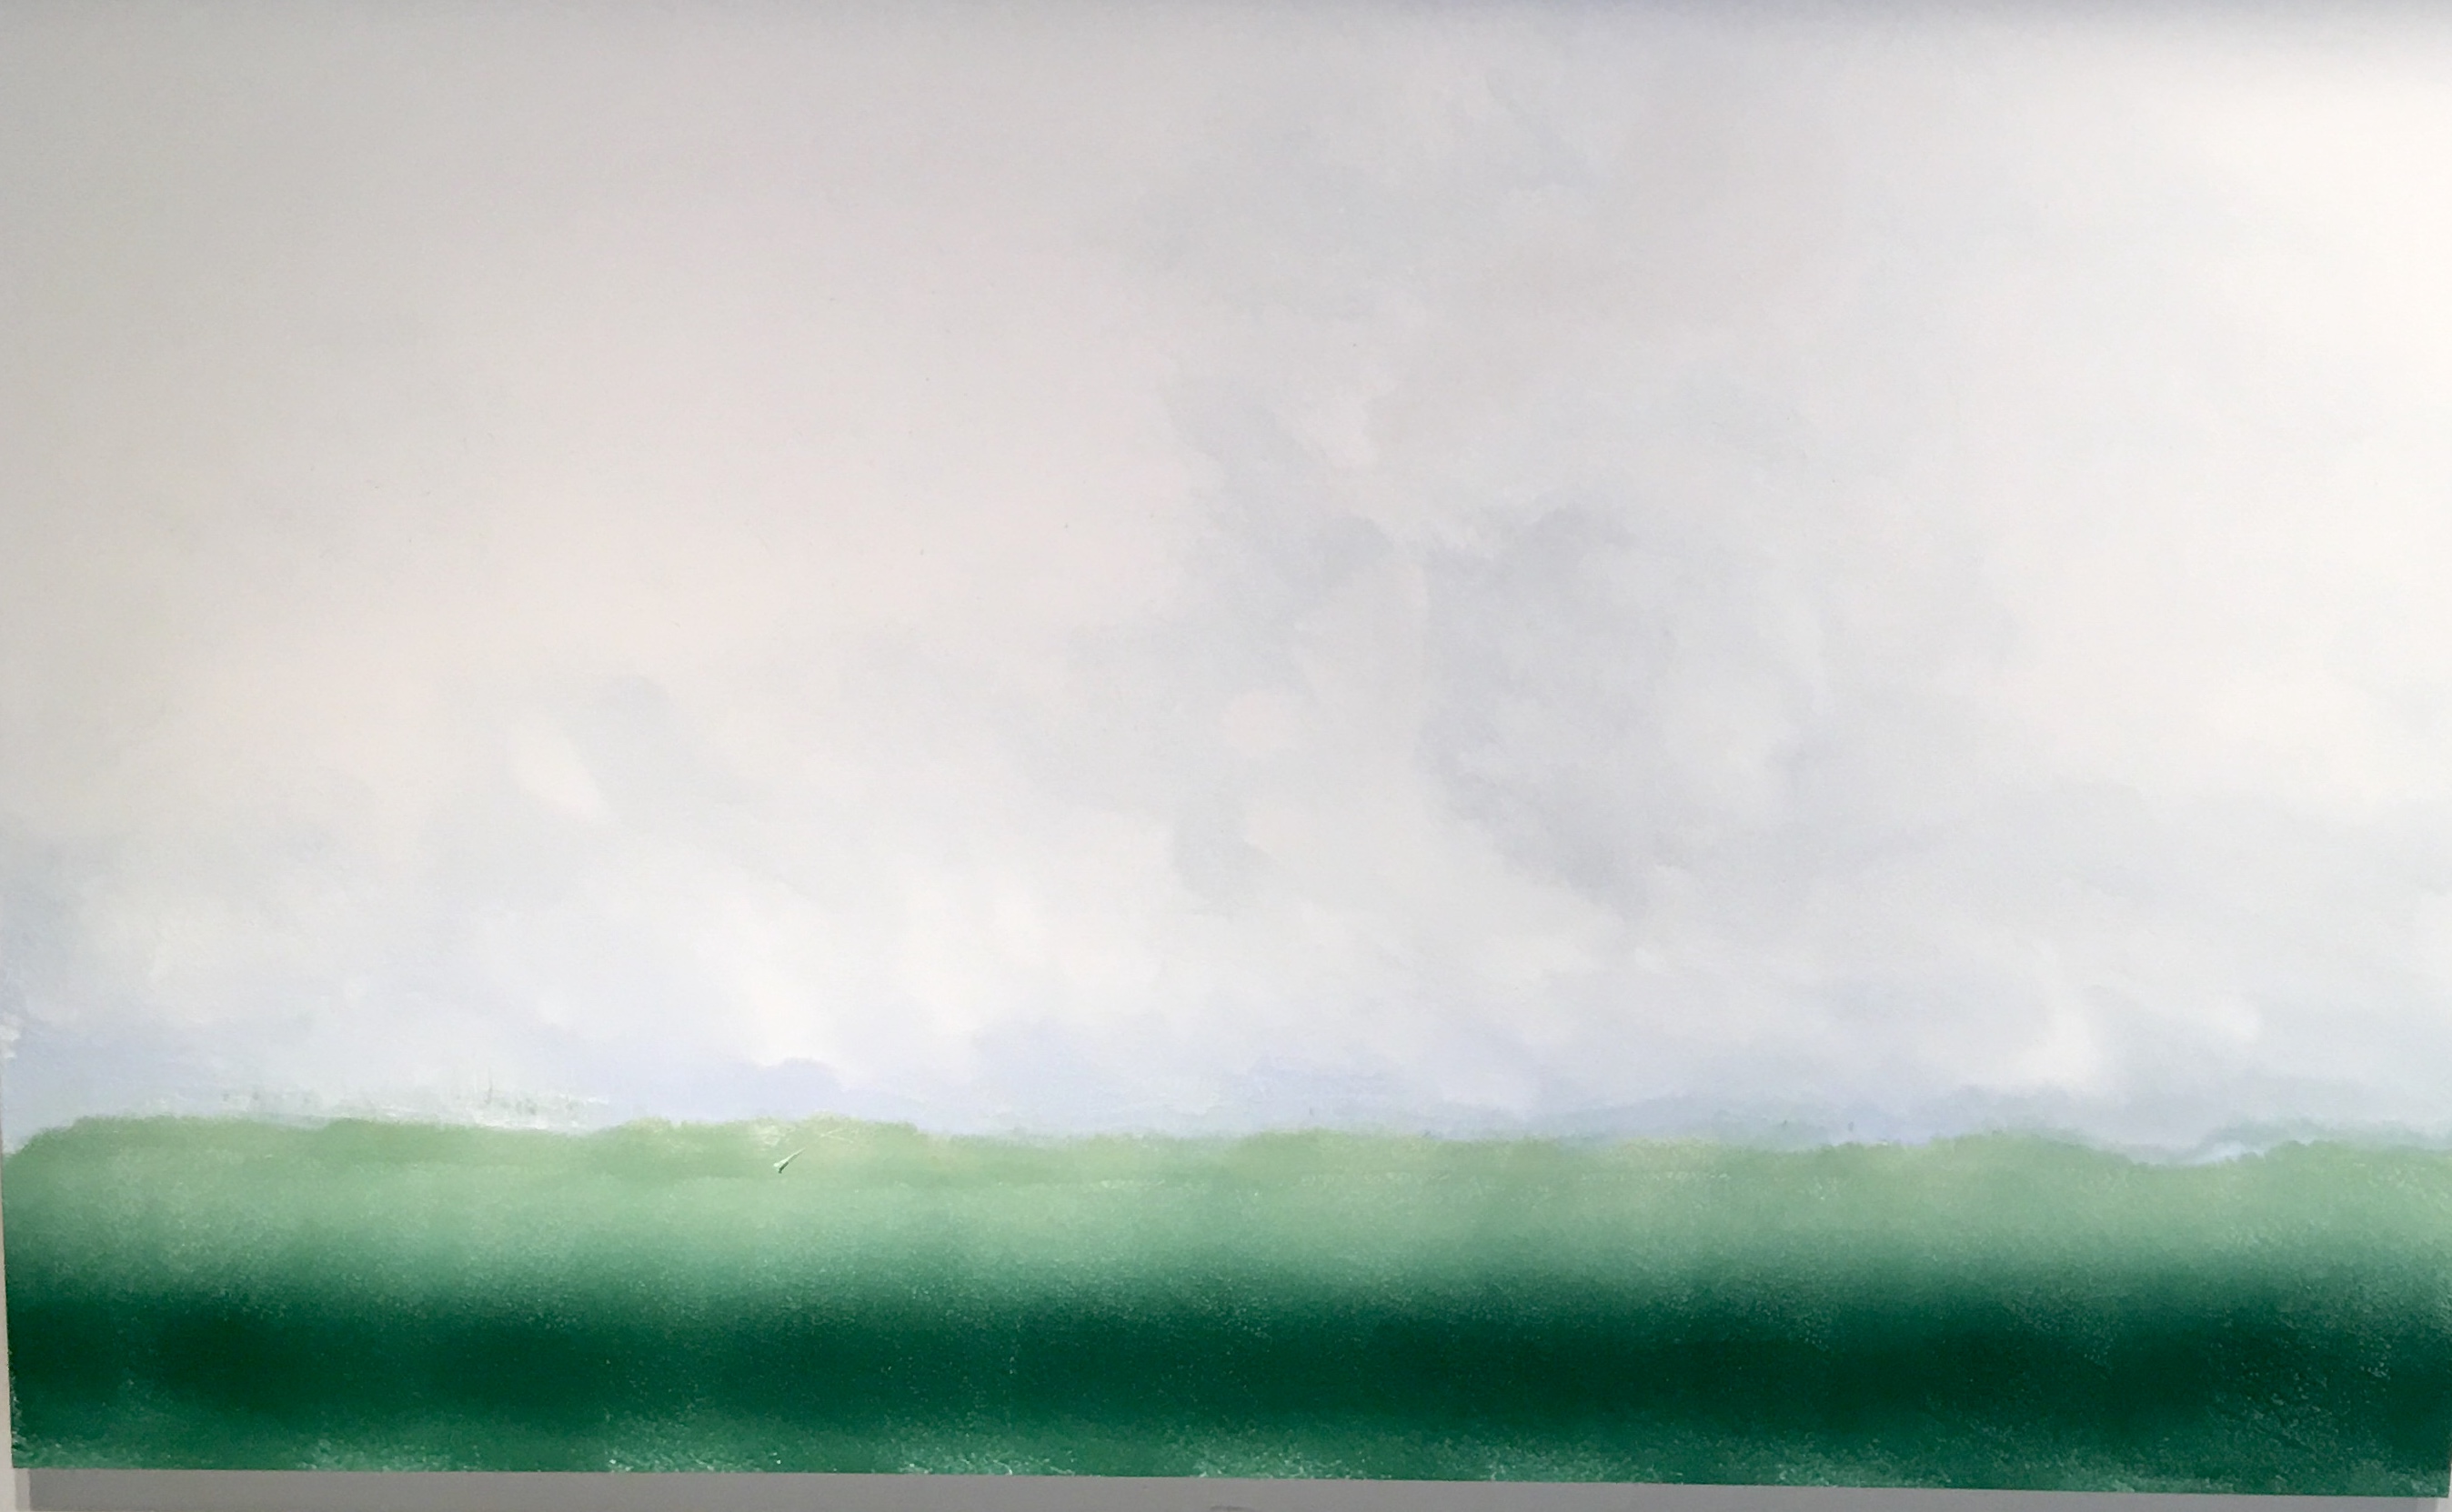 Une exposition mettant en vedette la peinture de Jacques Lamotte sur un fond vert et blanc vibrant.